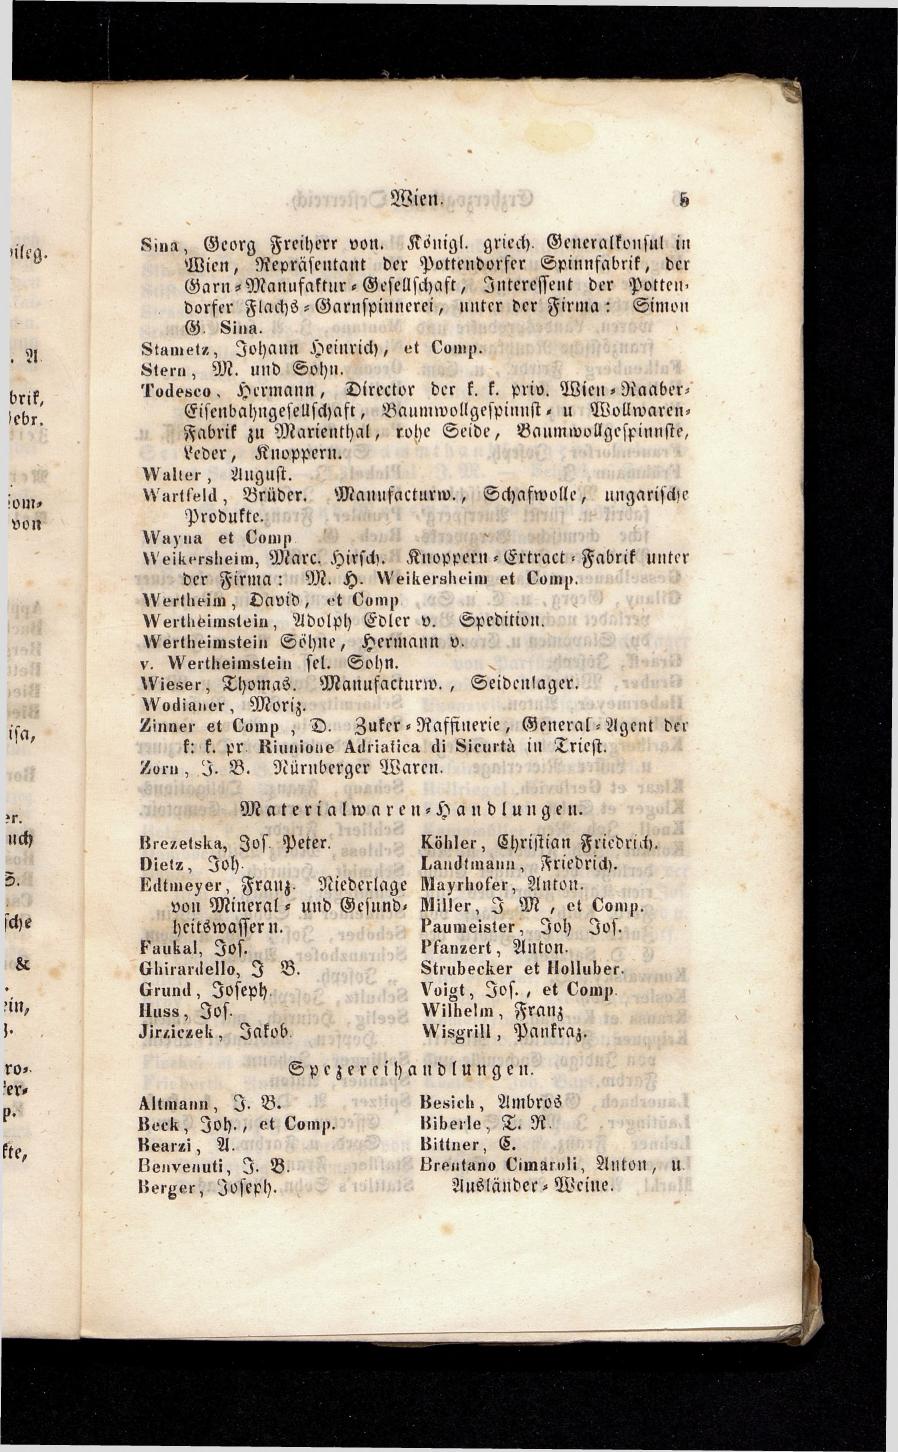 Grosses Adressbuch der Kaufleute. No. 13. Oesterreich ober u. unter der Enns 1844 - Seite 9